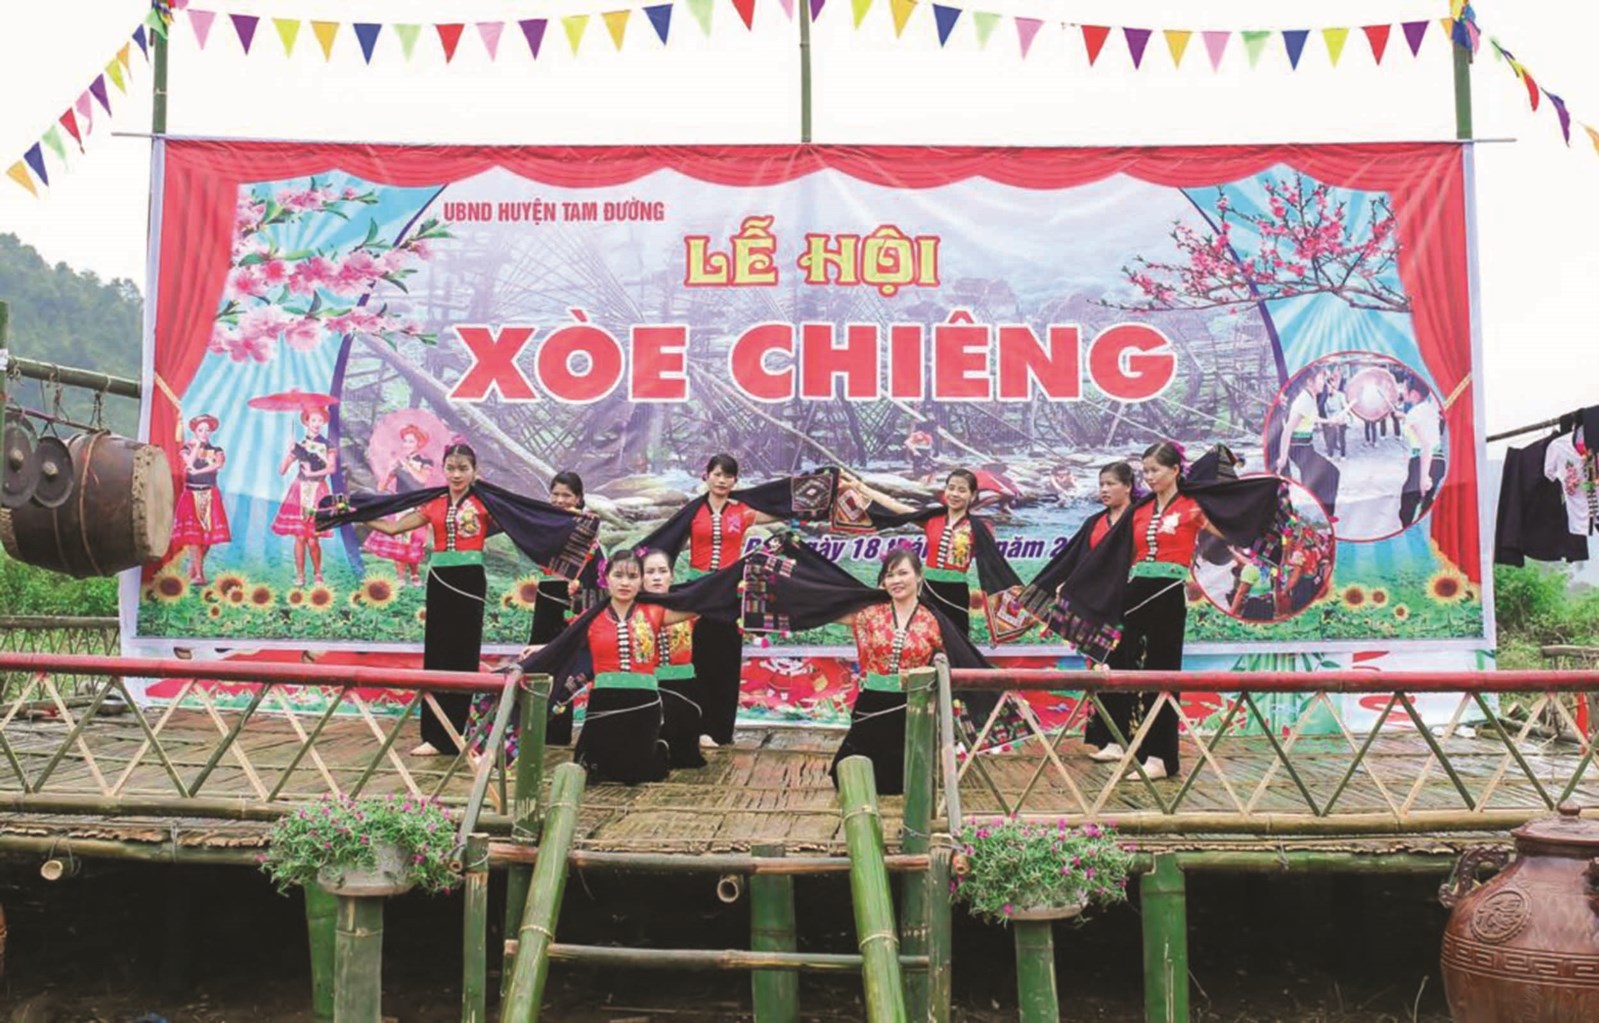  Lễ hội xòe chiêng là một trong những lễ hội quan trọng của dân tộc Thái vùng Tây Bắc nói chung và người Thái ở huyện Tam Đường nói riêng.